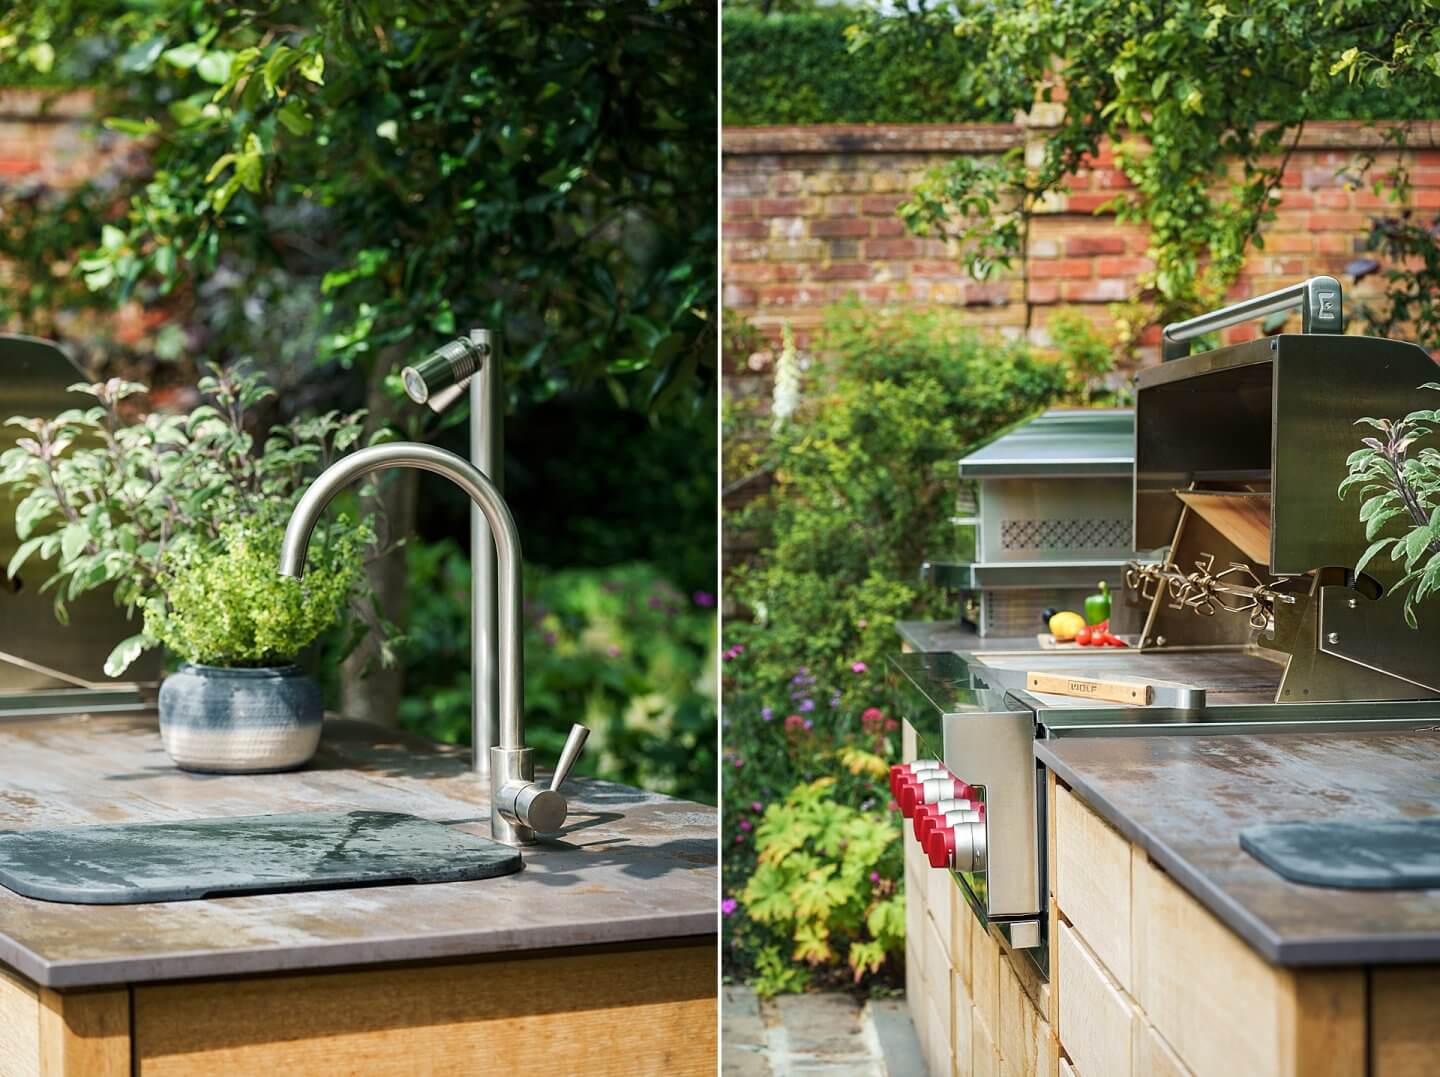 outdoor kitchen details of oven, worktops and sink